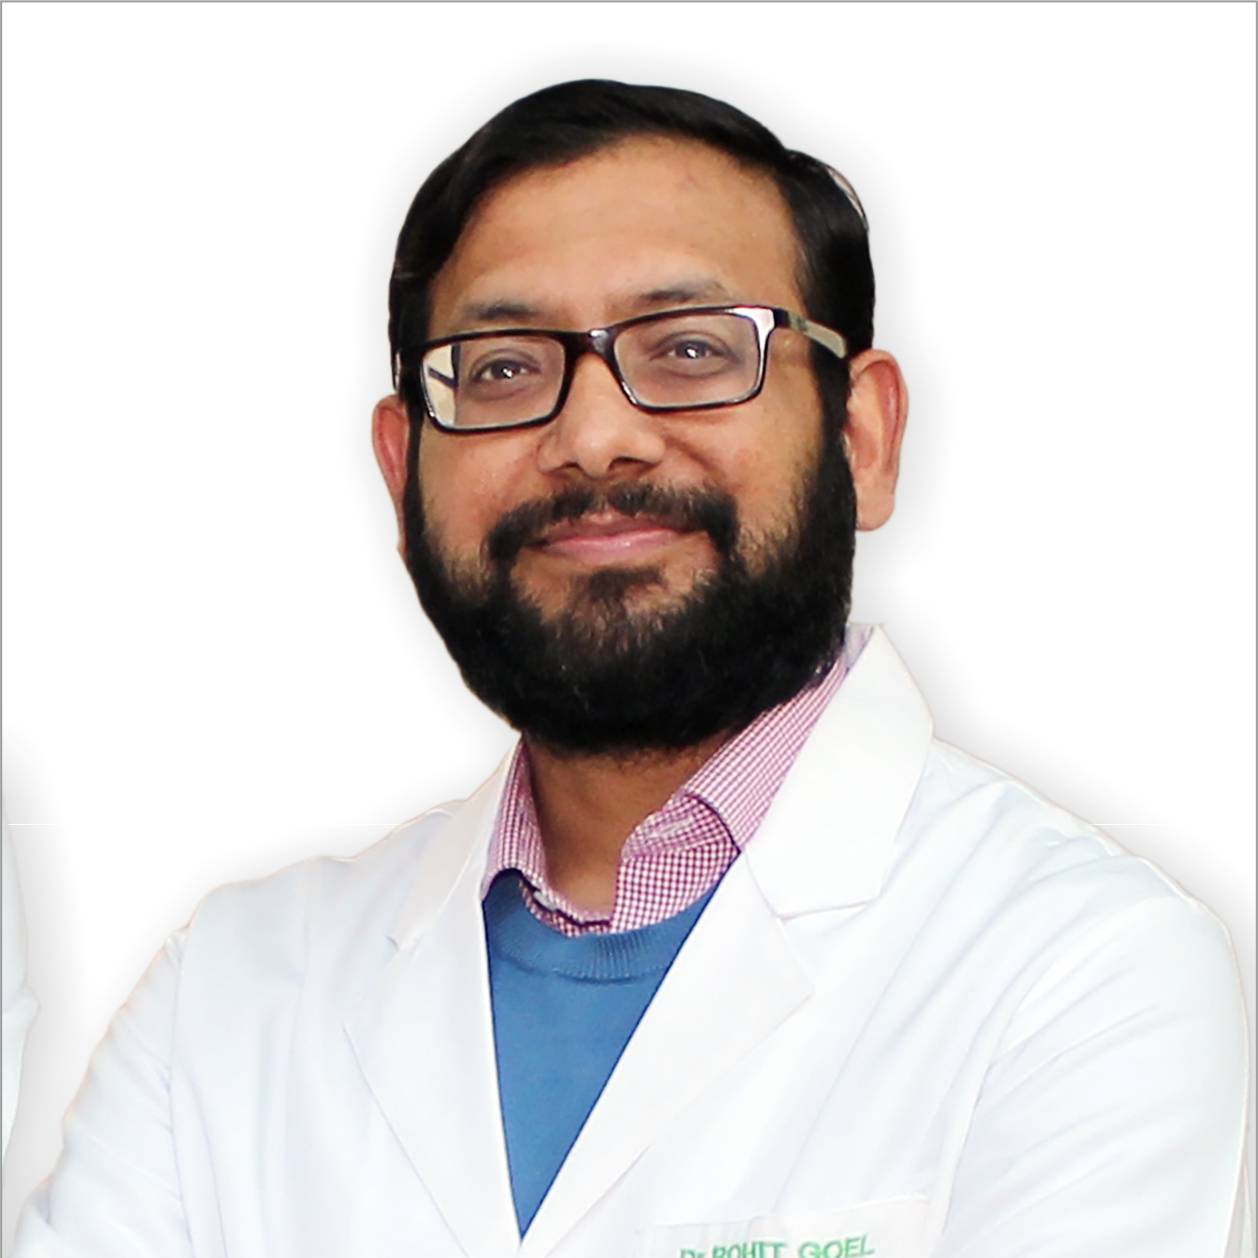 Dr. Rohit Goel